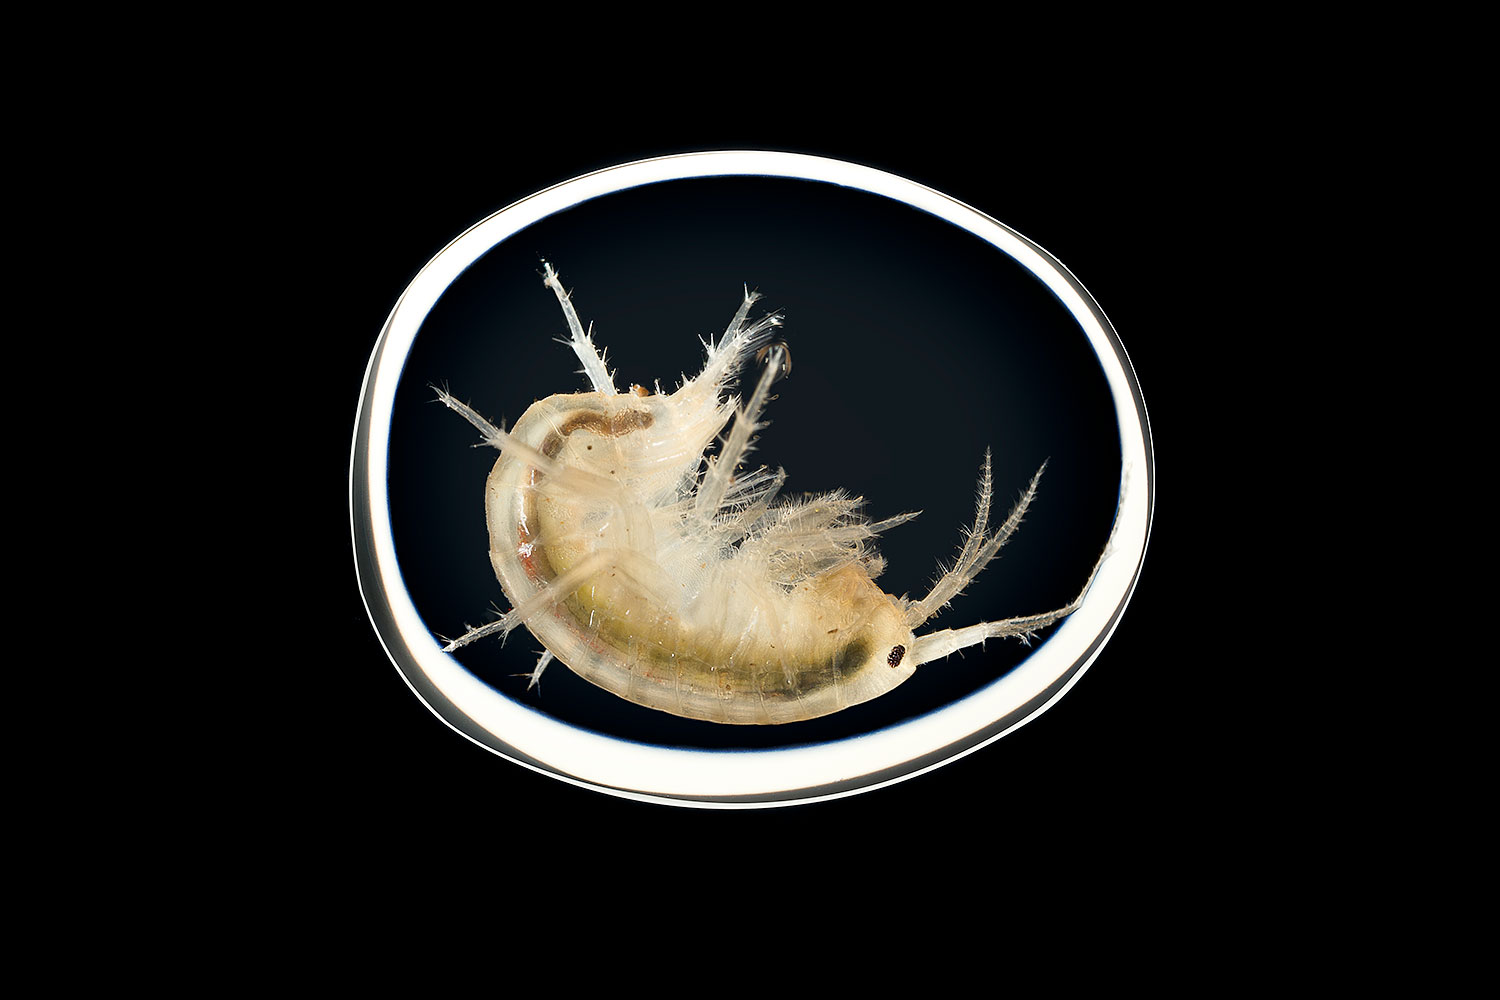 Freshwater shrimp inside water droplet